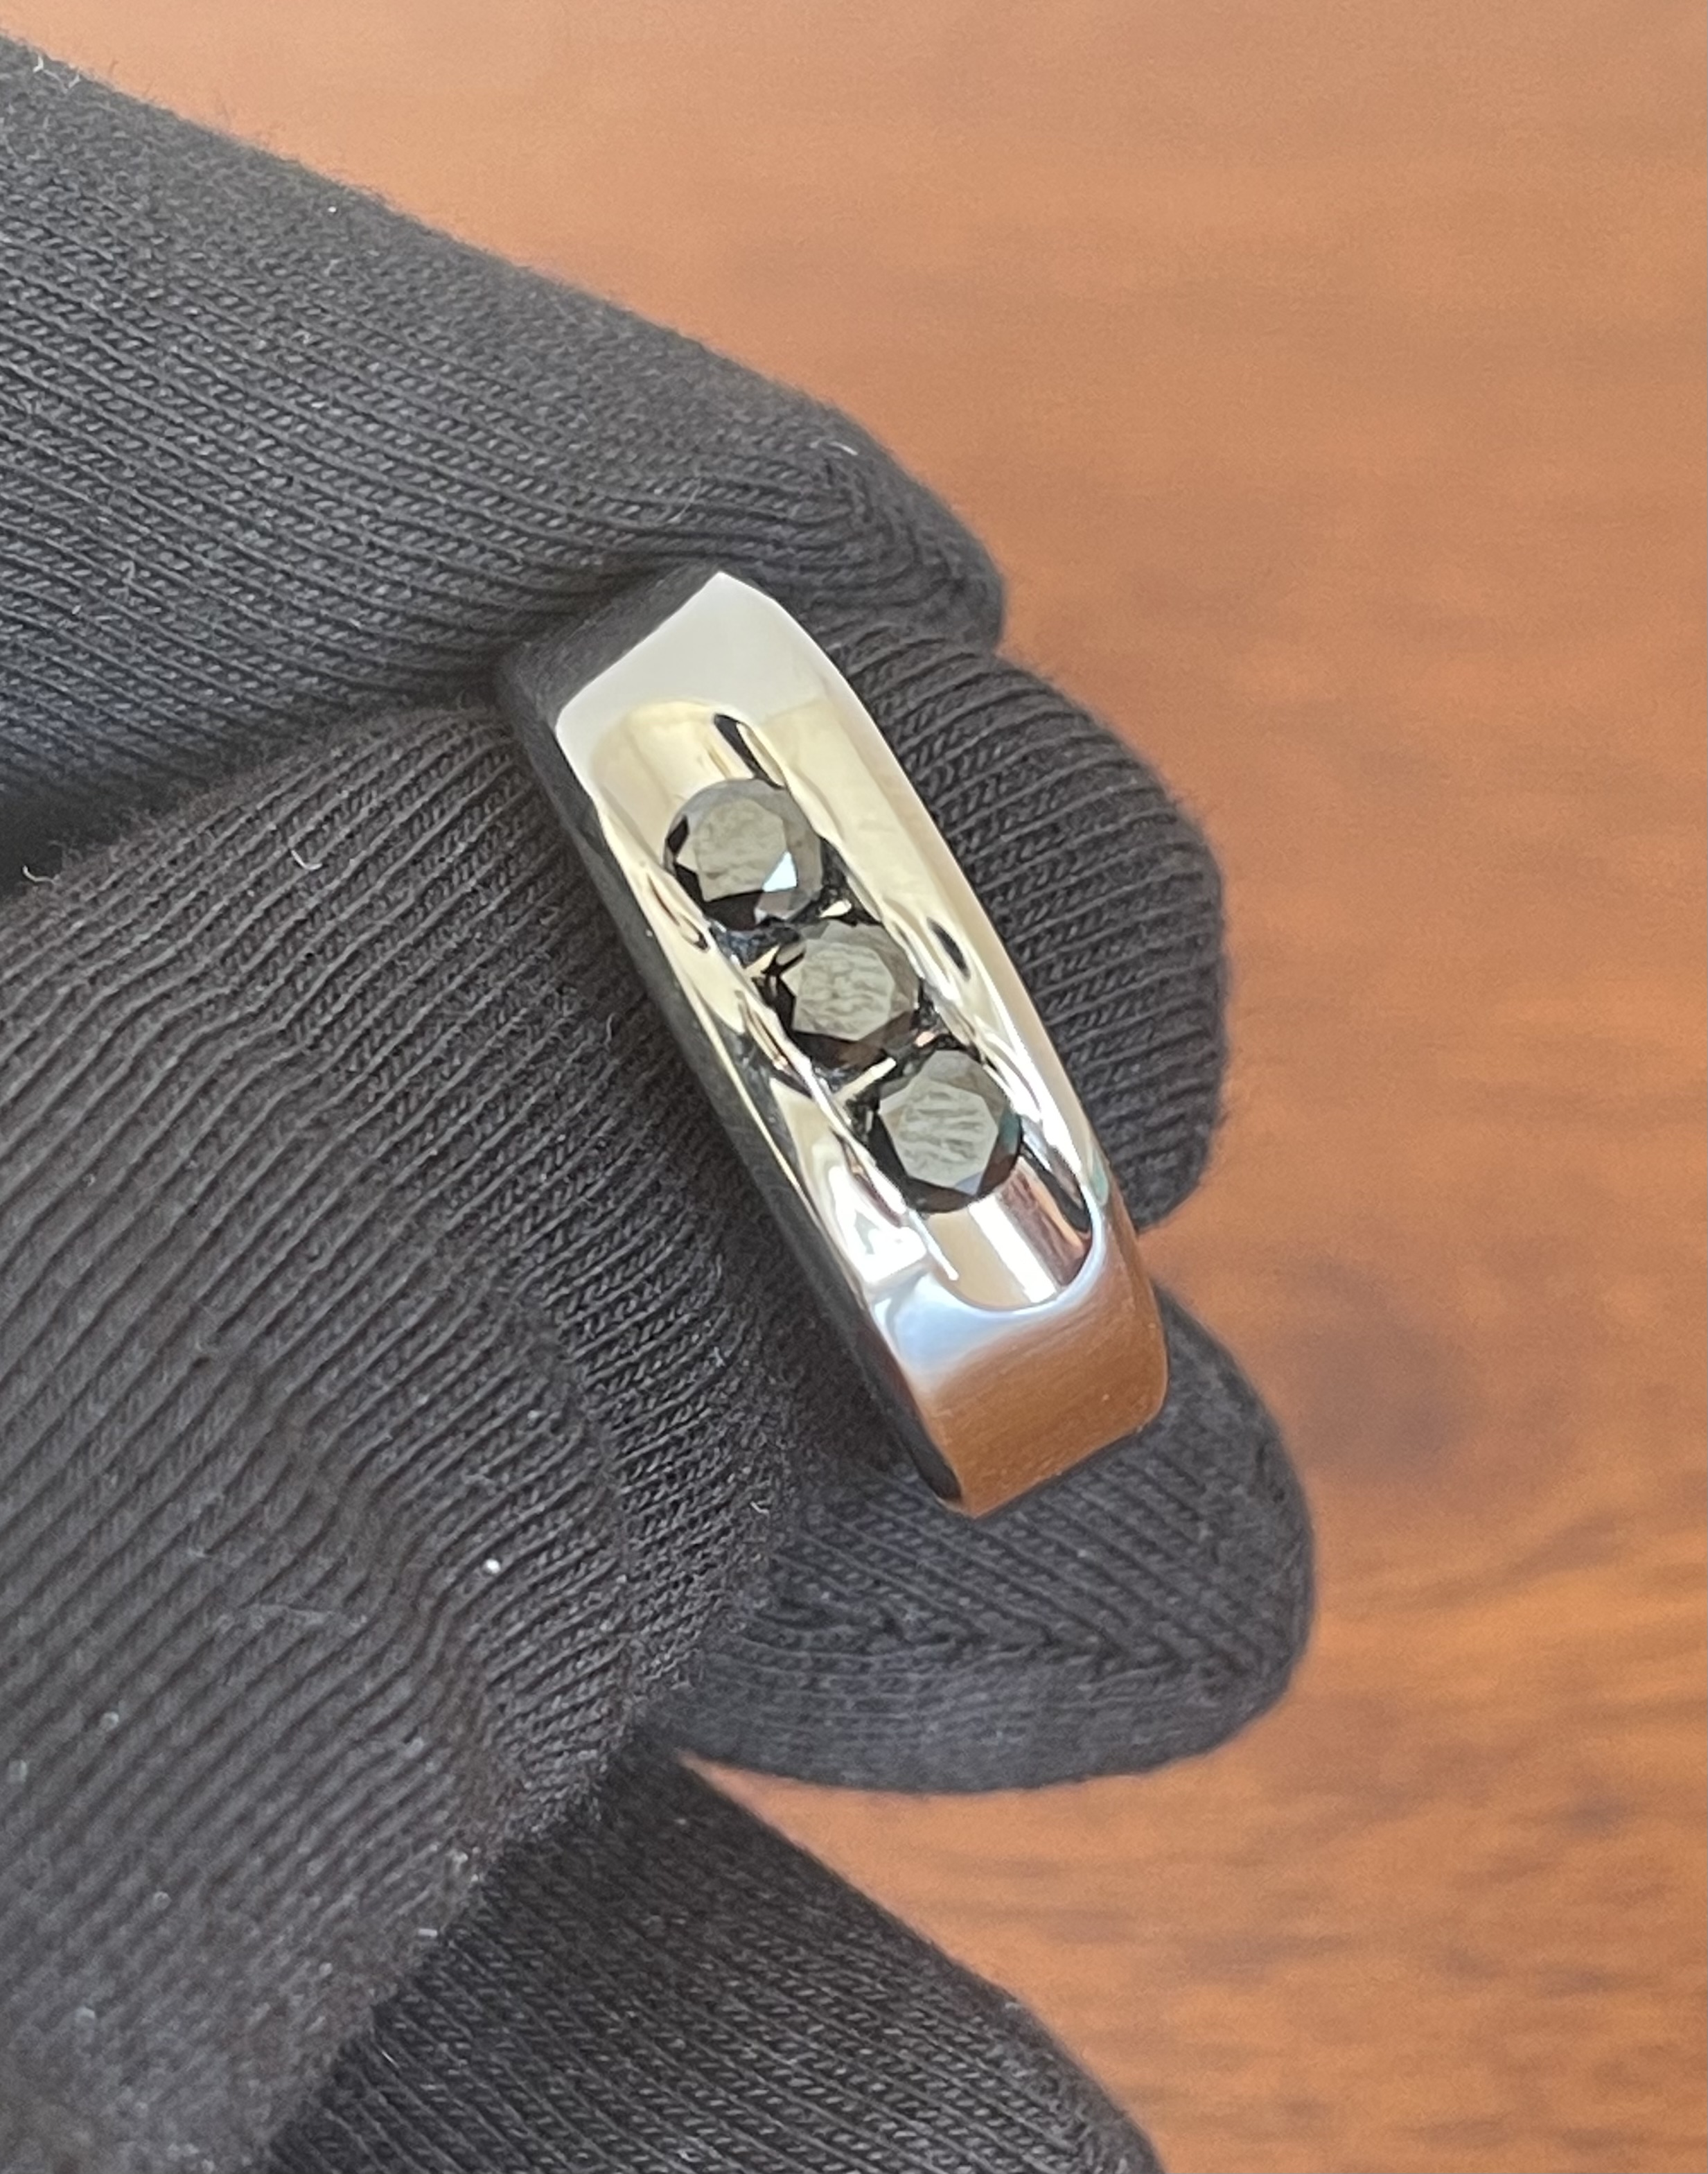 Мужское кольцо с чёрными бриллиантами(0,42 ct.) из платины 